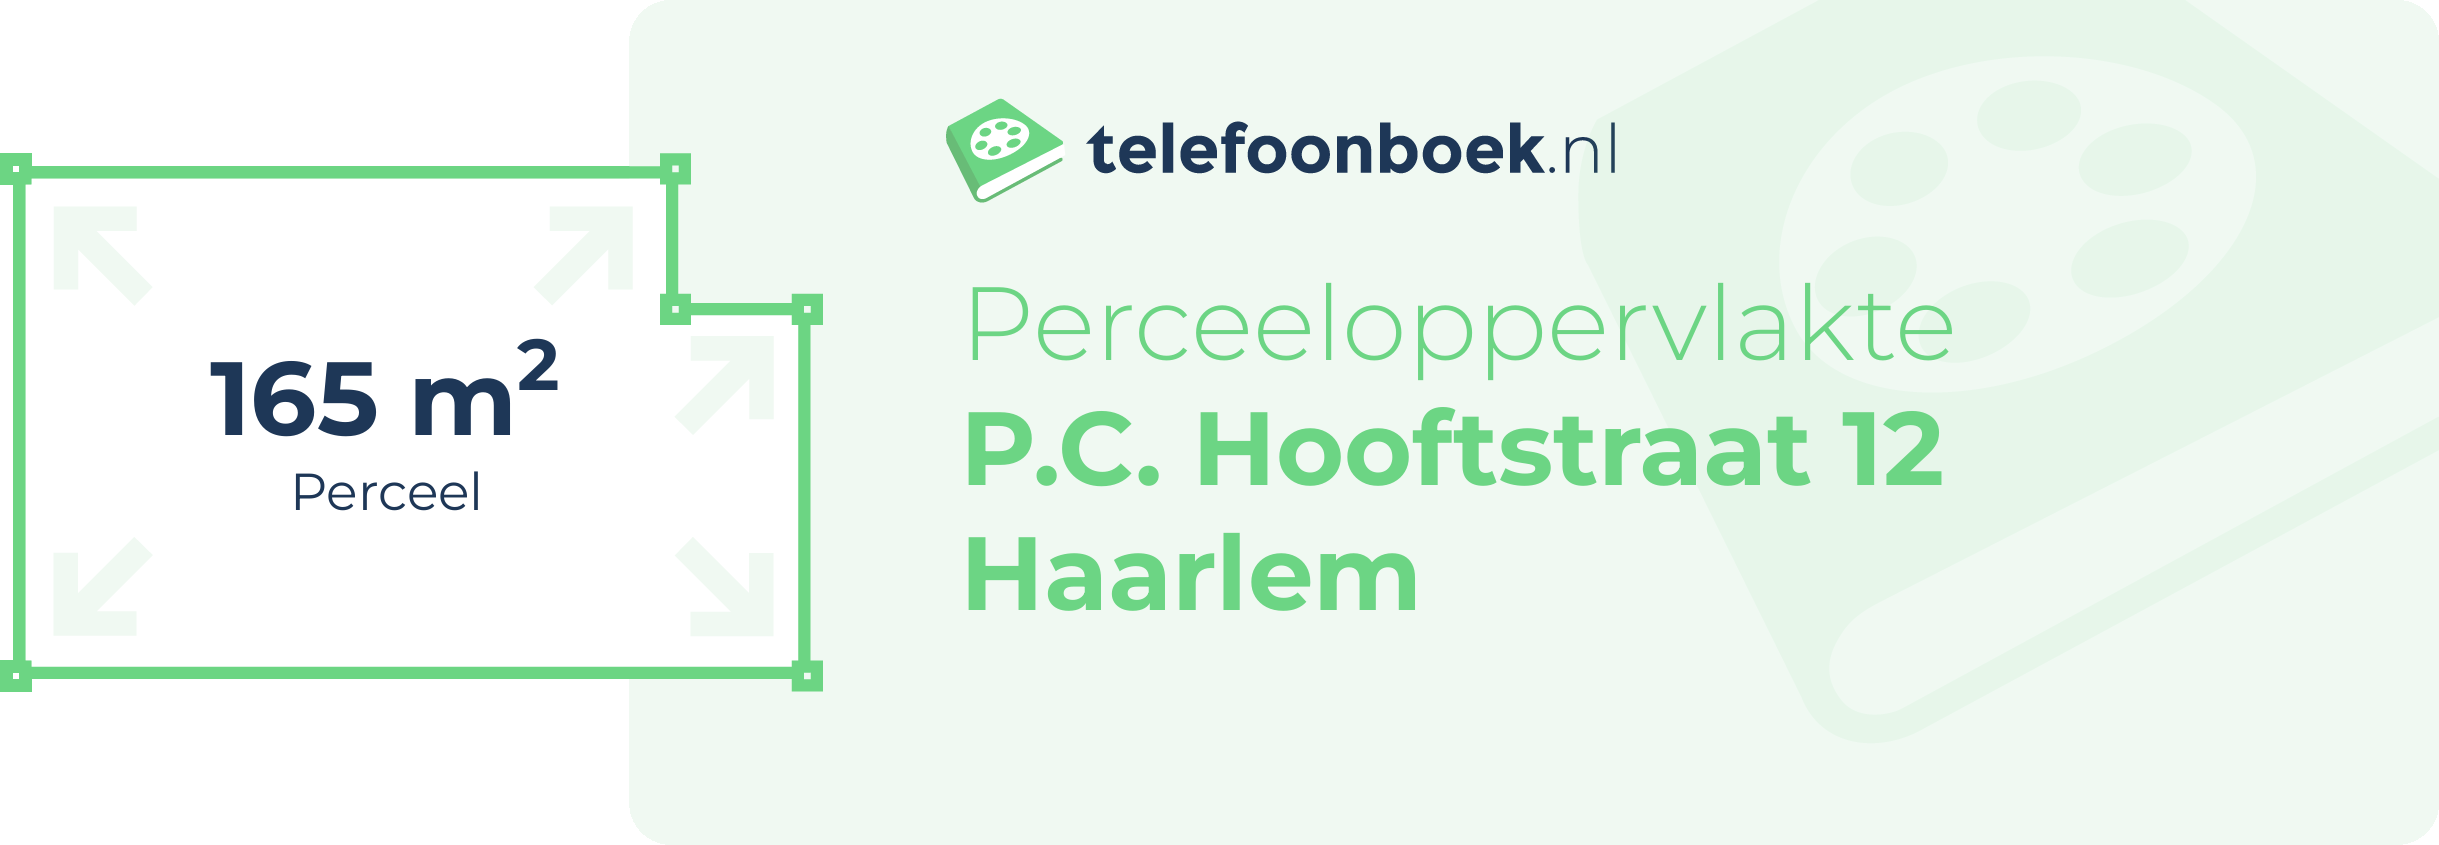 Perceeloppervlakte P.C. Hooftstraat 12 Haarlem